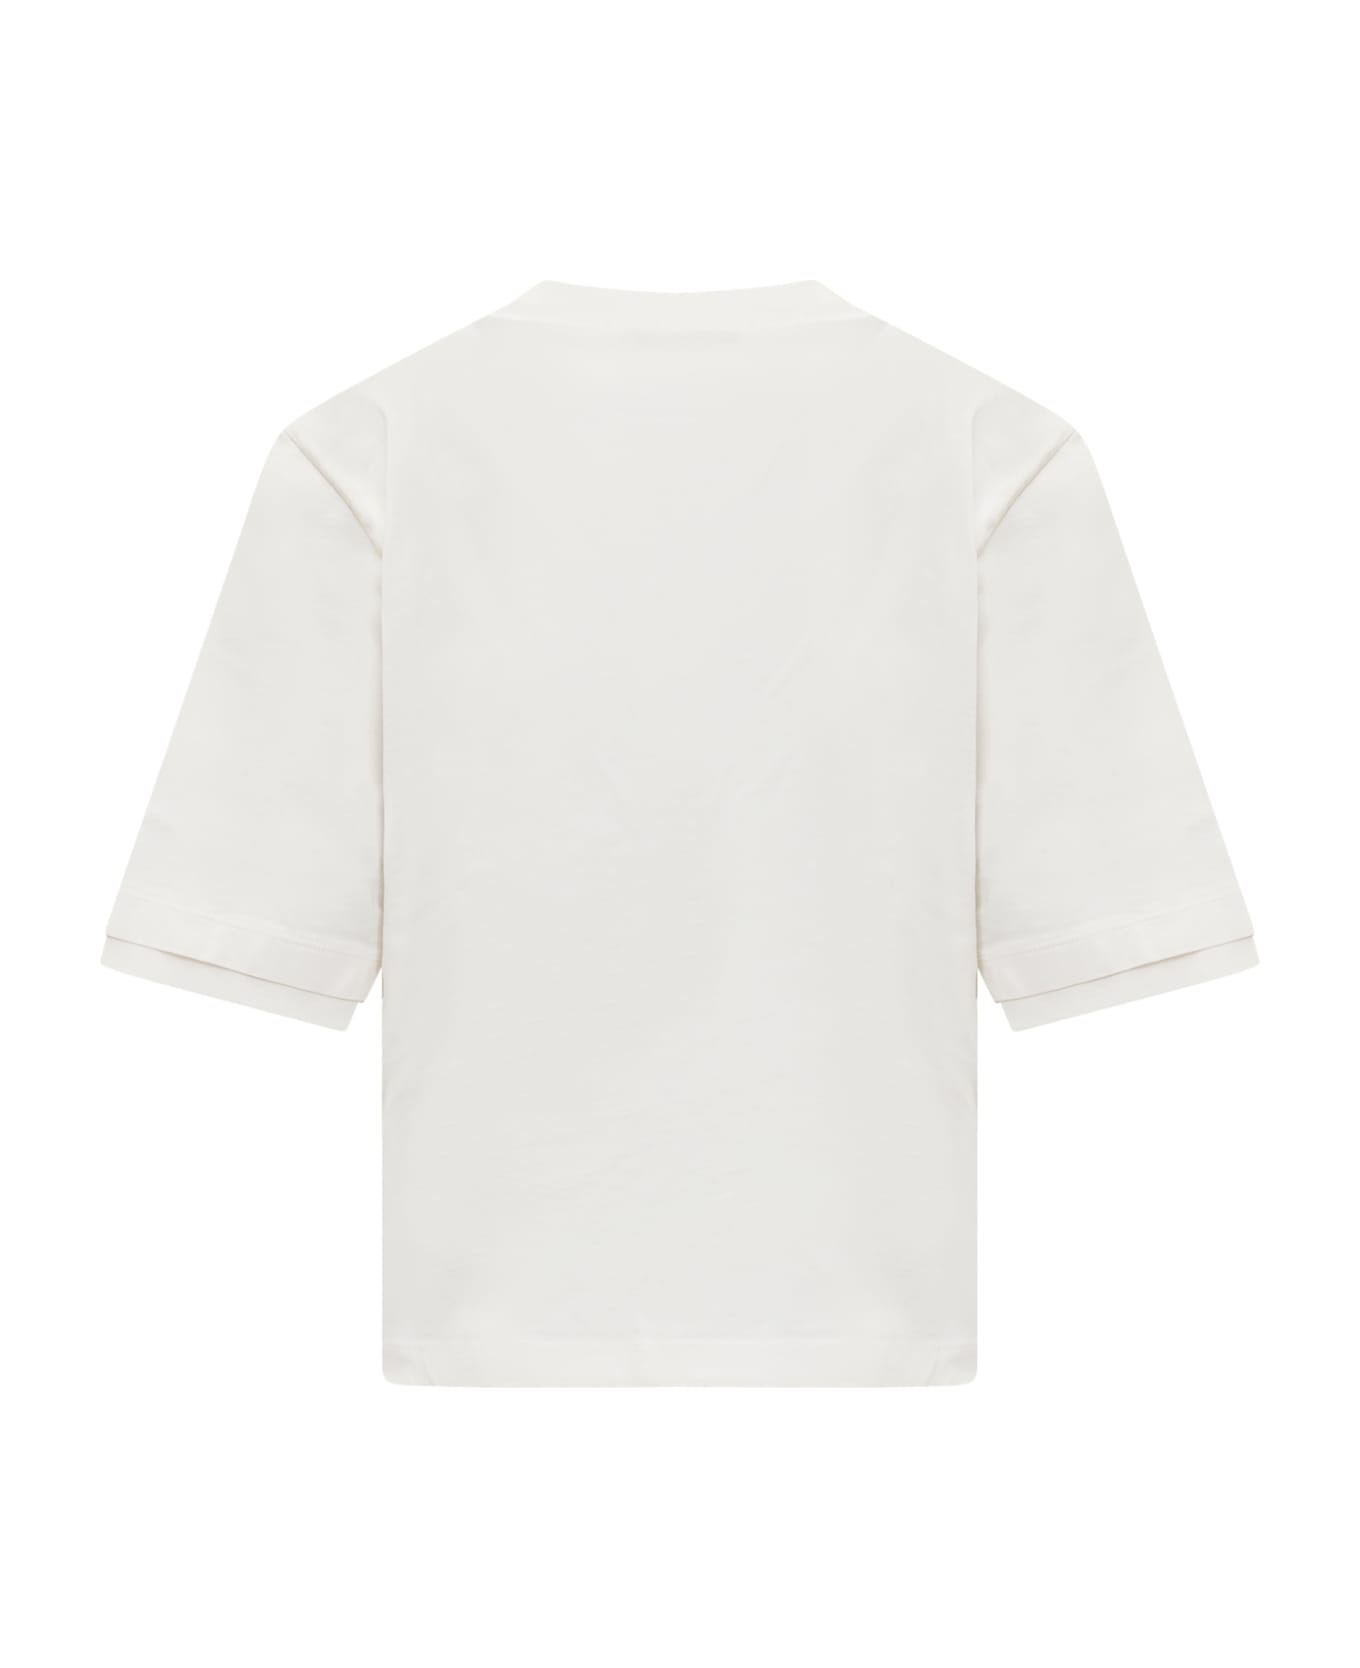 AMBUSH Crop T-shirt - CLOUD DANCER Tシャツ